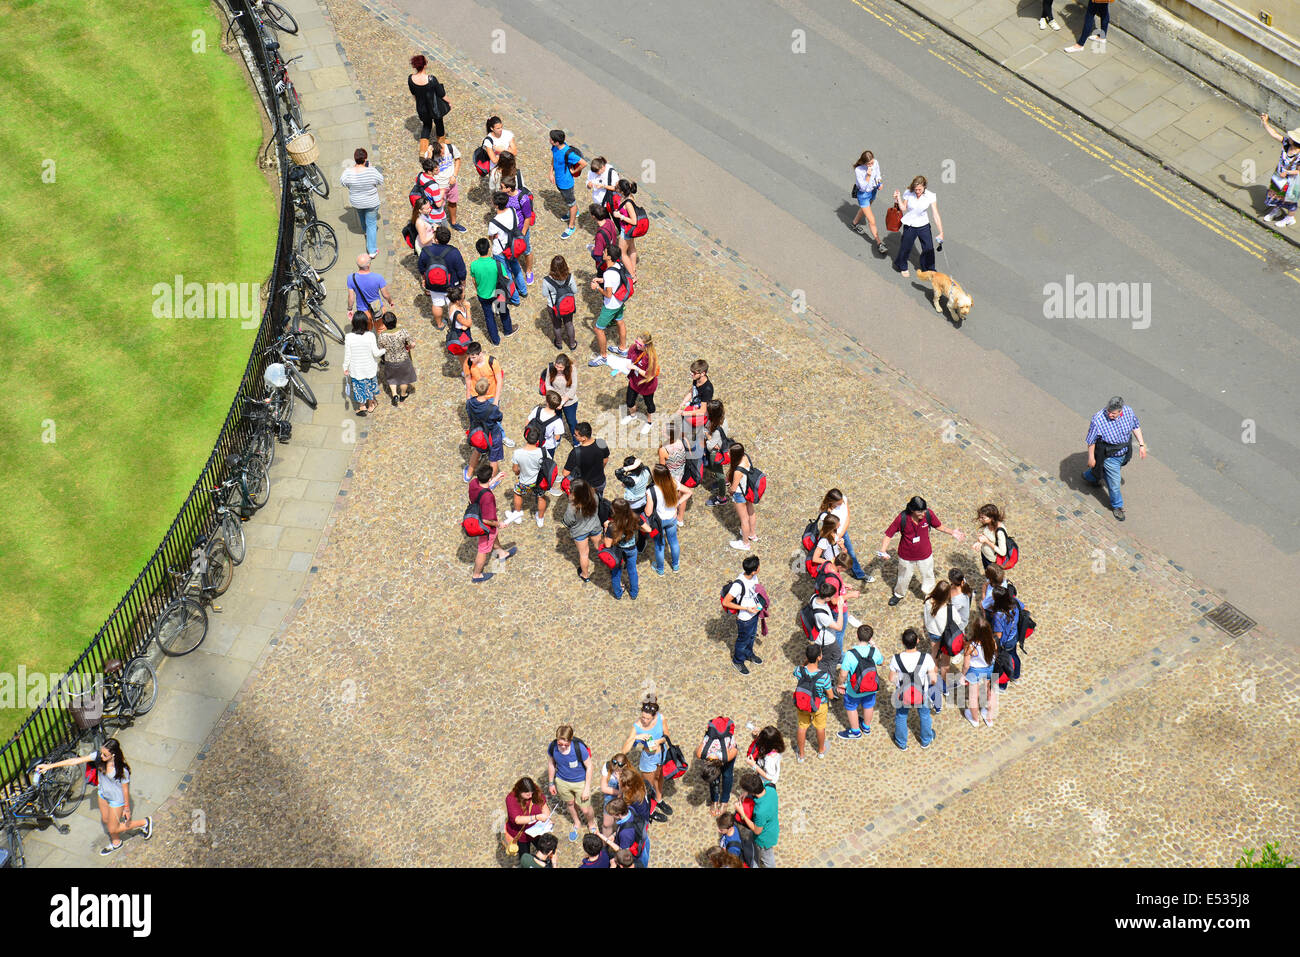 Vue aérienne d'étudiants de St.Mary la Vierge, Radcliffe Square, Oxford, Oxfordshire, Angleterre, Royaume-Uni Banque D'Images